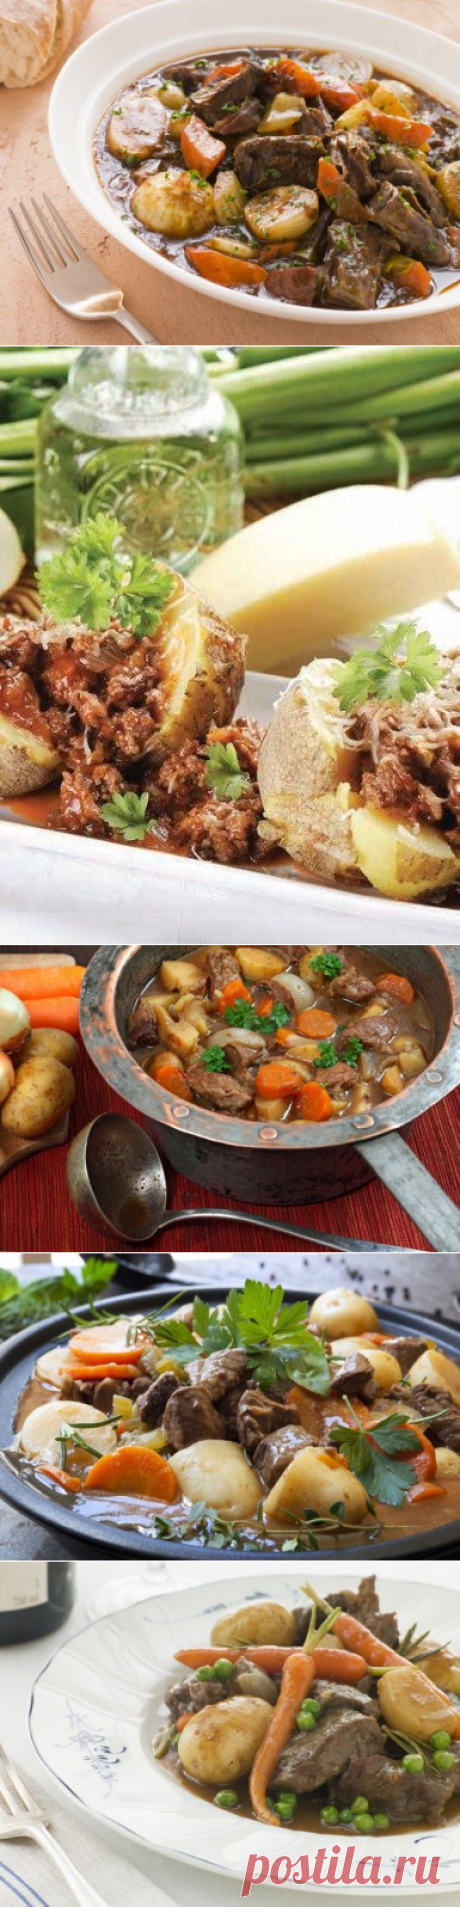 5 лучших рецептов ирландского мясного рагу